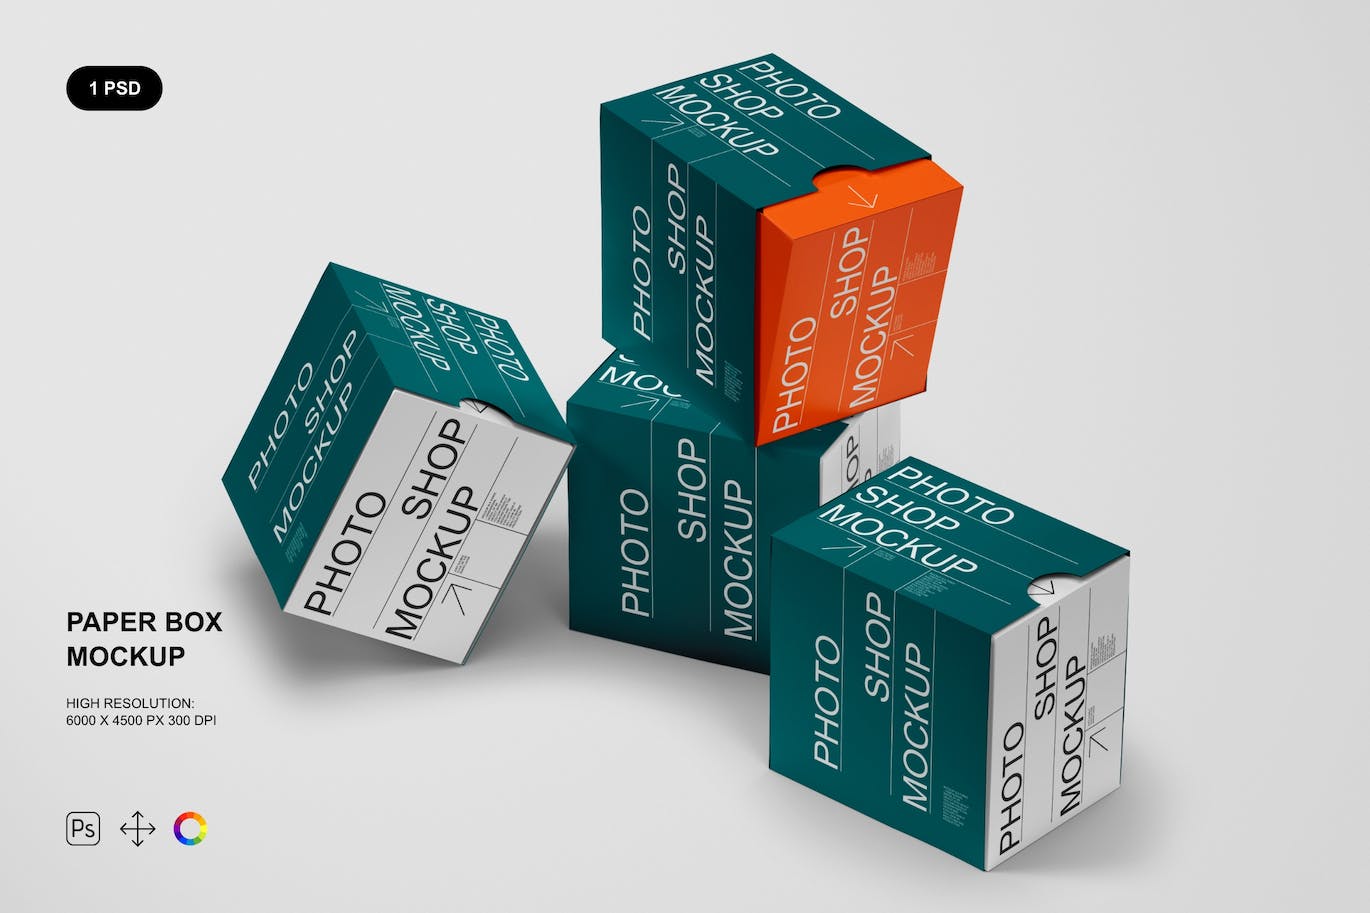 抽拉式纸盒包装设计样机 Paper Box Mockup 样机素材 第1张